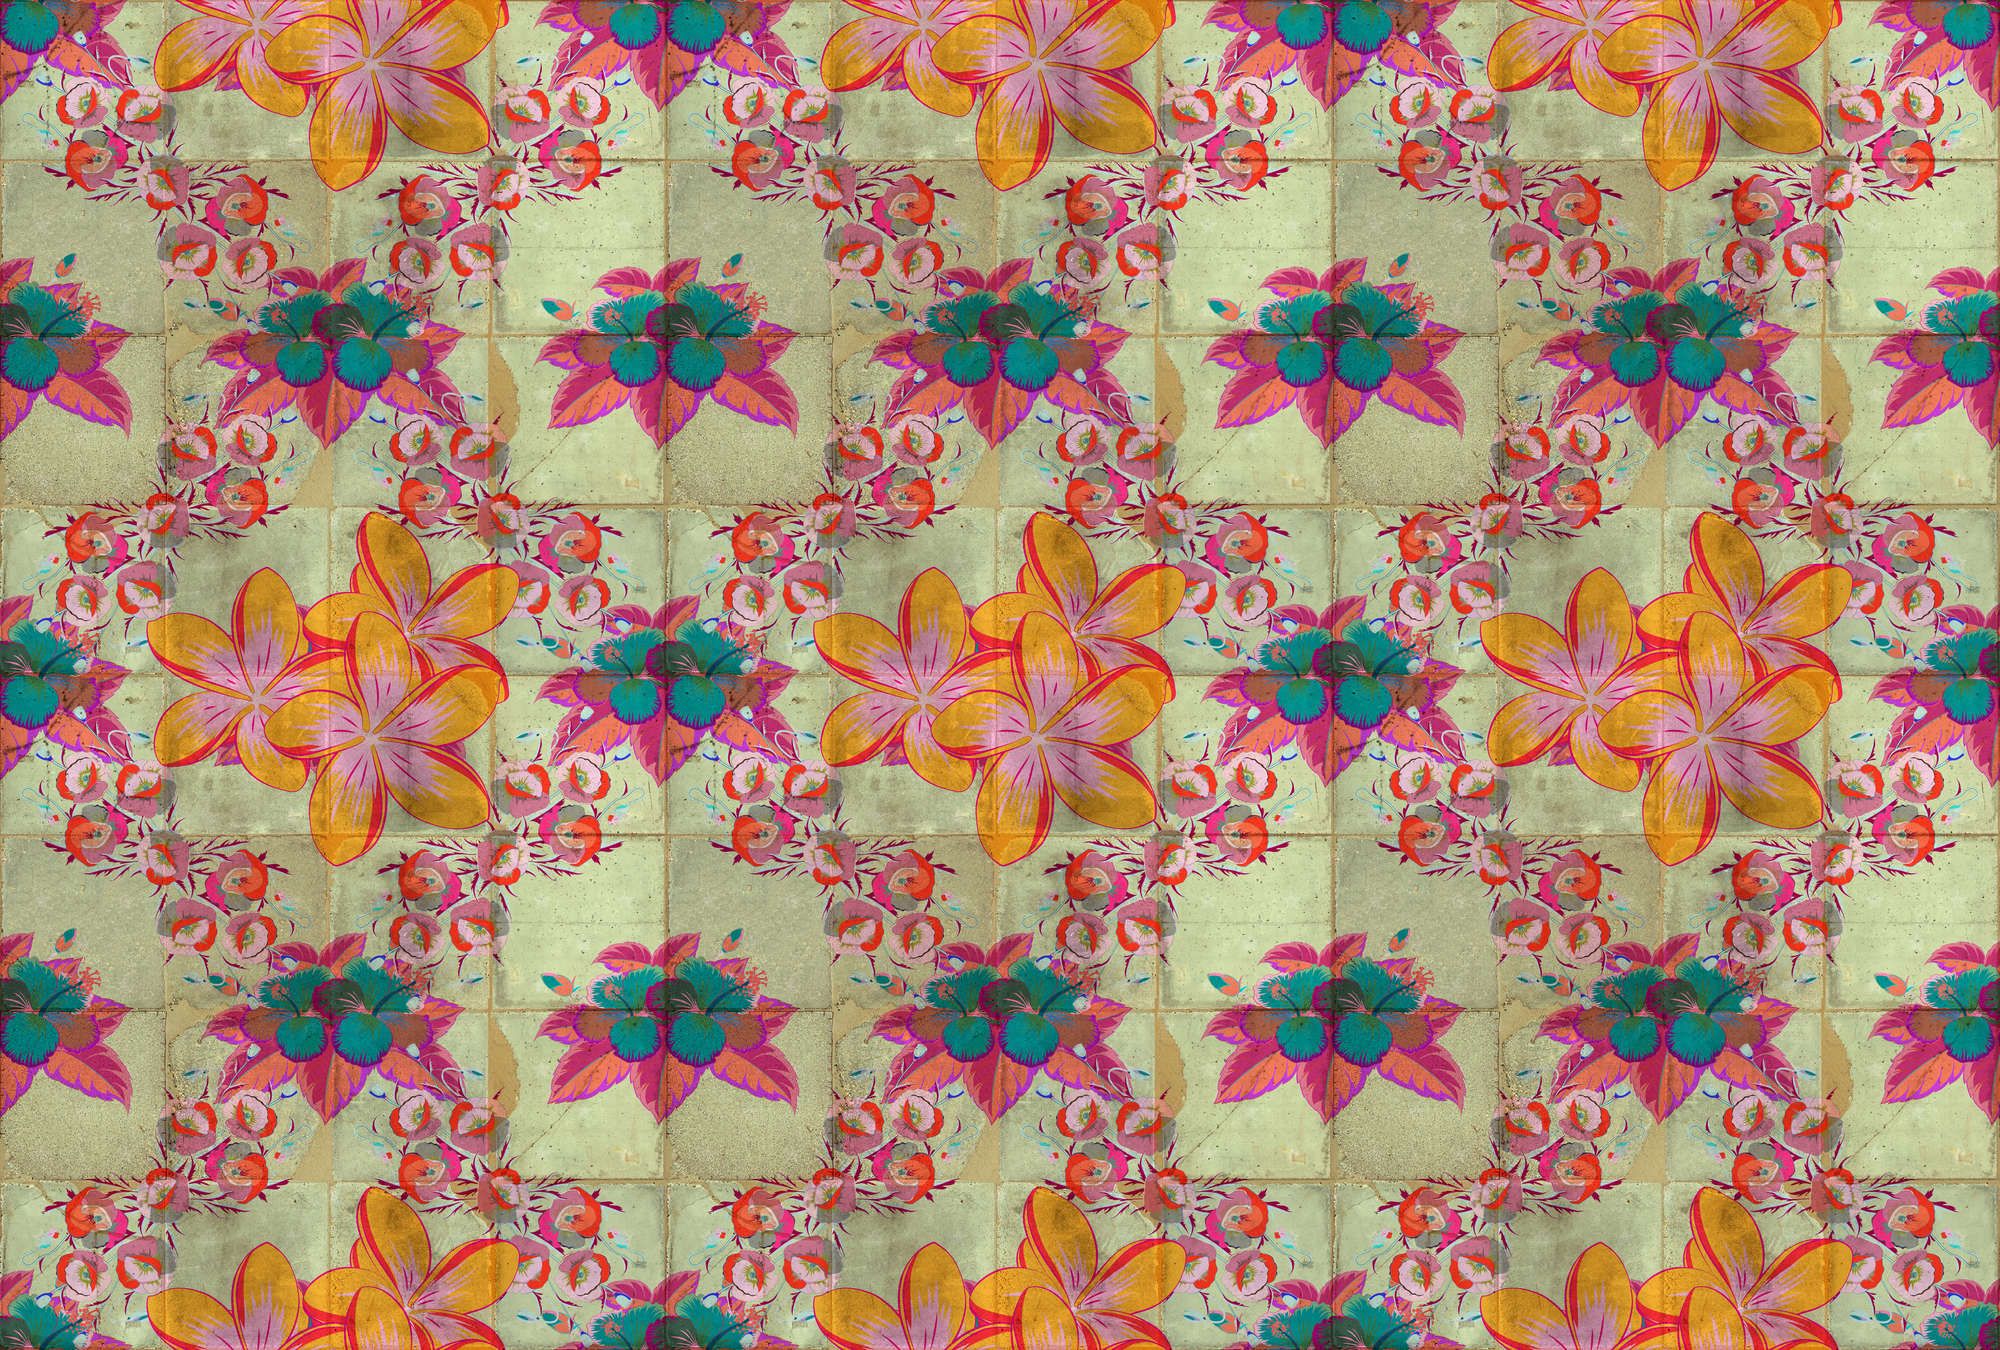             Fotomural »jolie« - Diseño floral con efecto caleidoscopio sobre estructura de baldosas de hormigón - Material no tejido de textura ligera
        